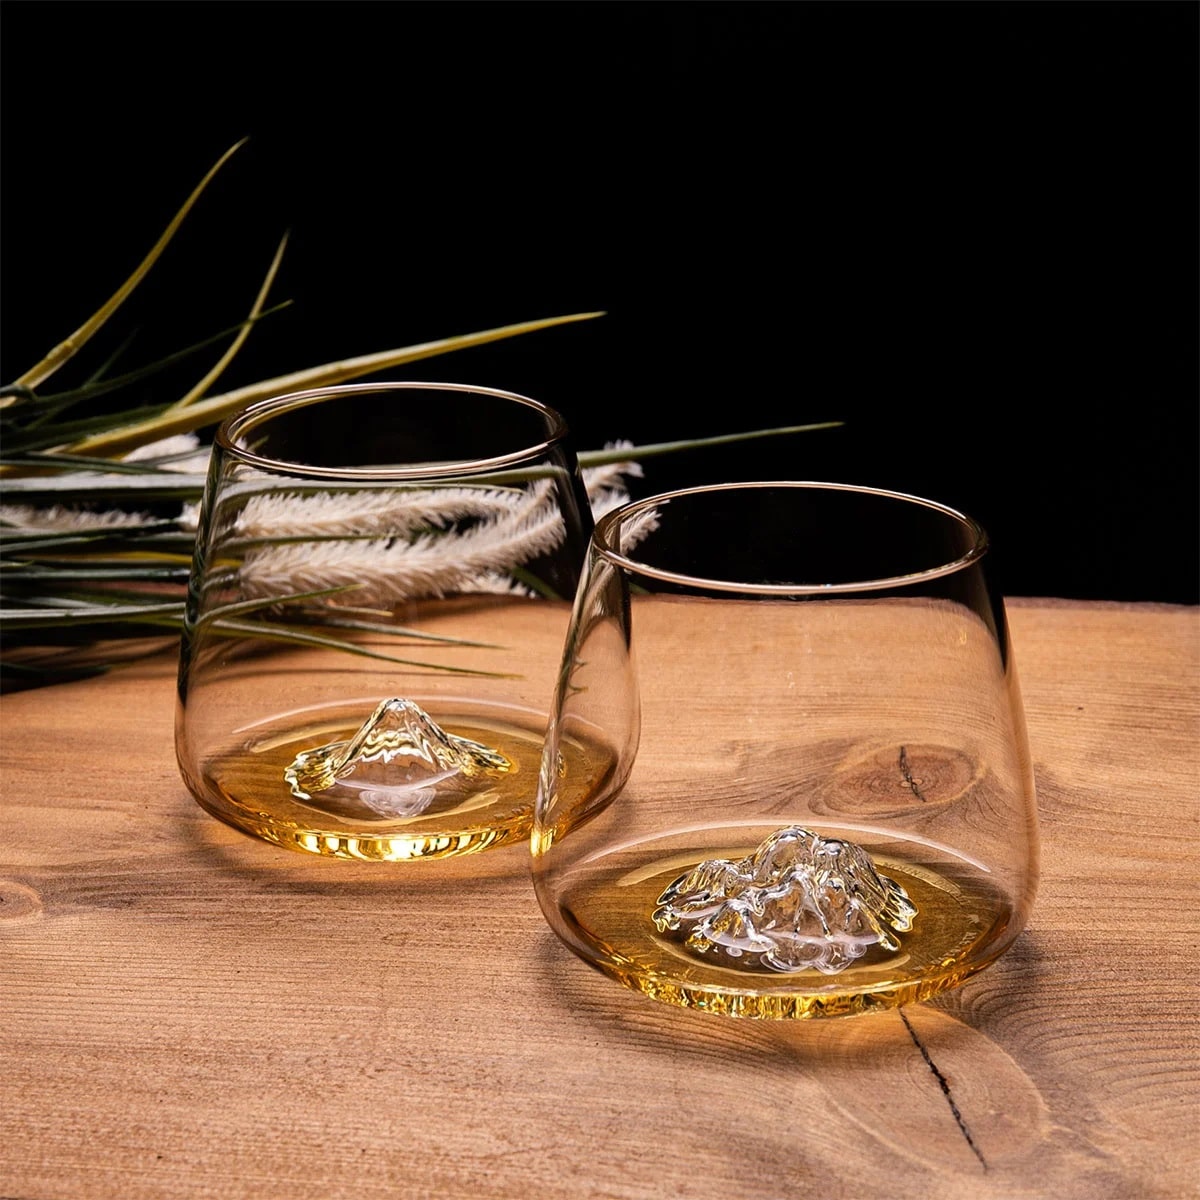 Cadeau Les Raffineurs verre whisky